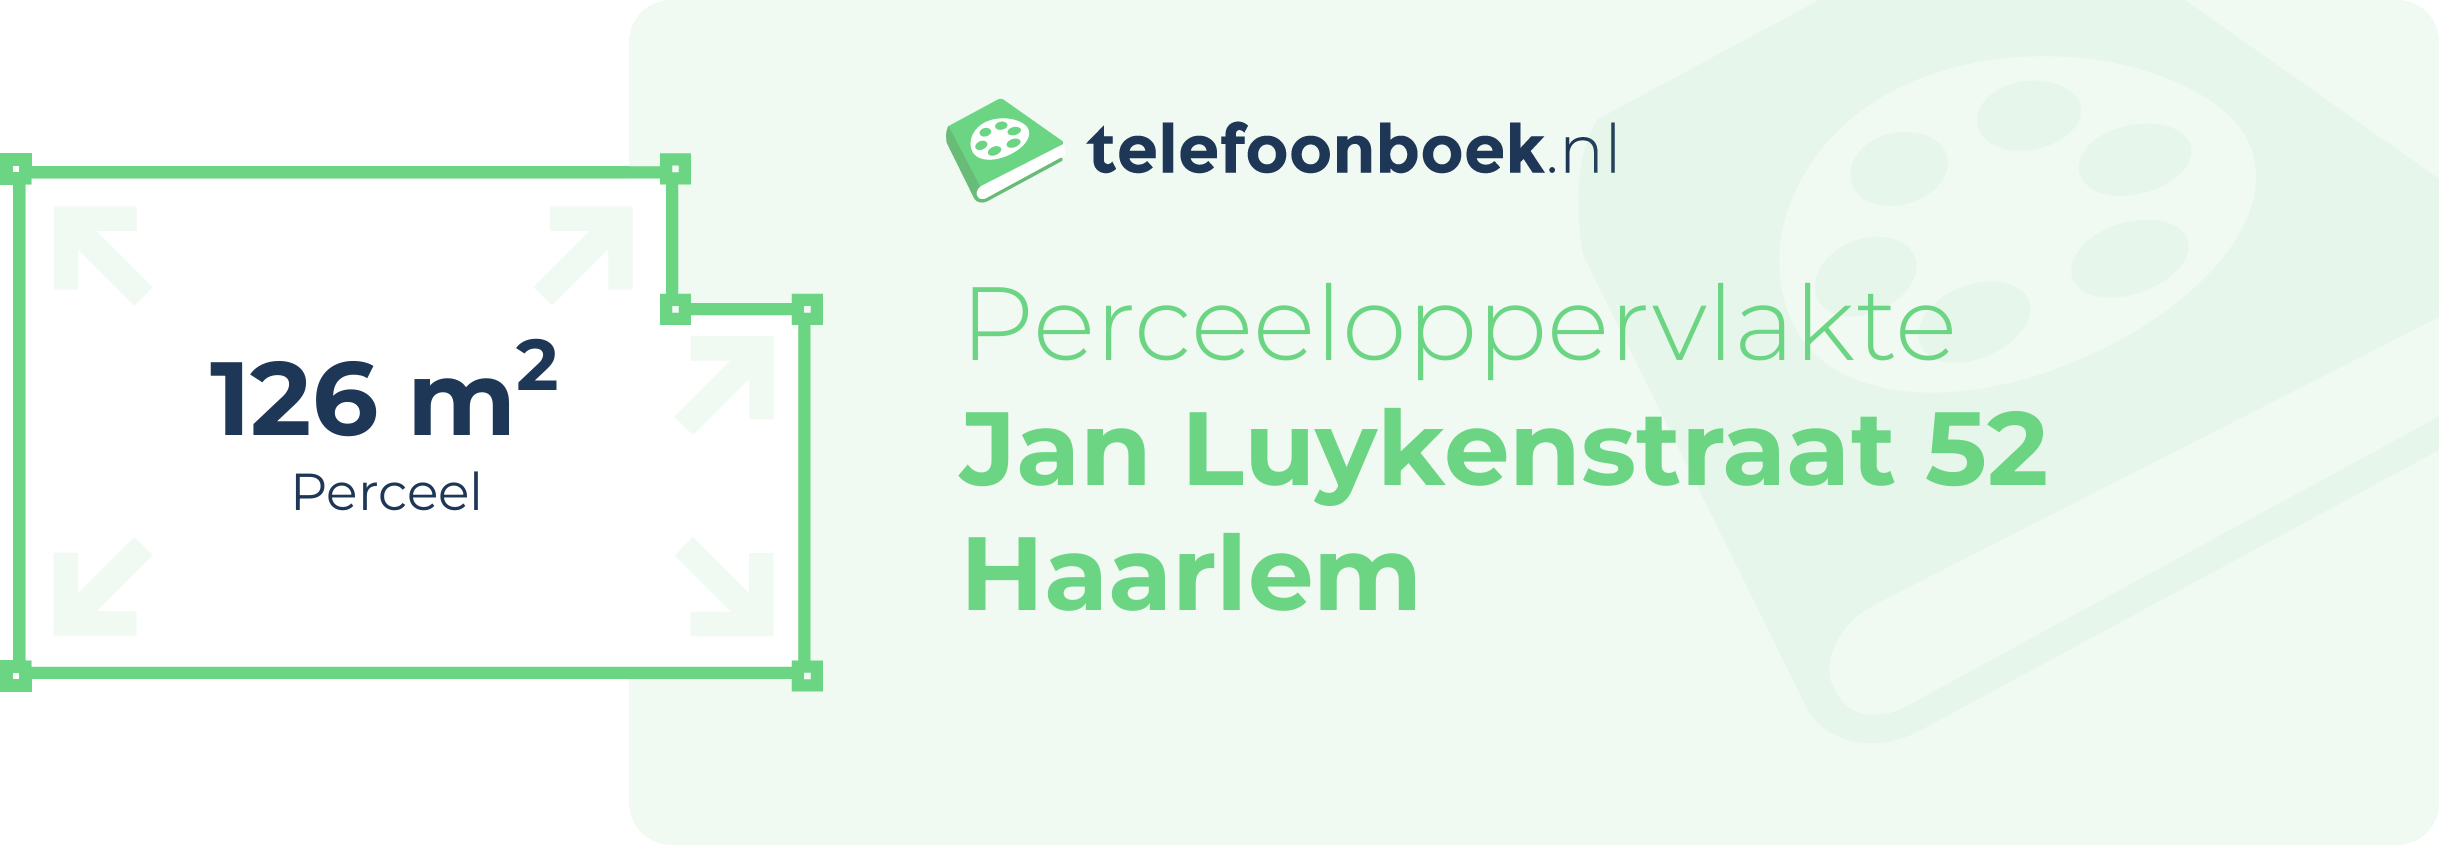 Perceeloppervlakte Jan Luykenstraat 52 Haarlem